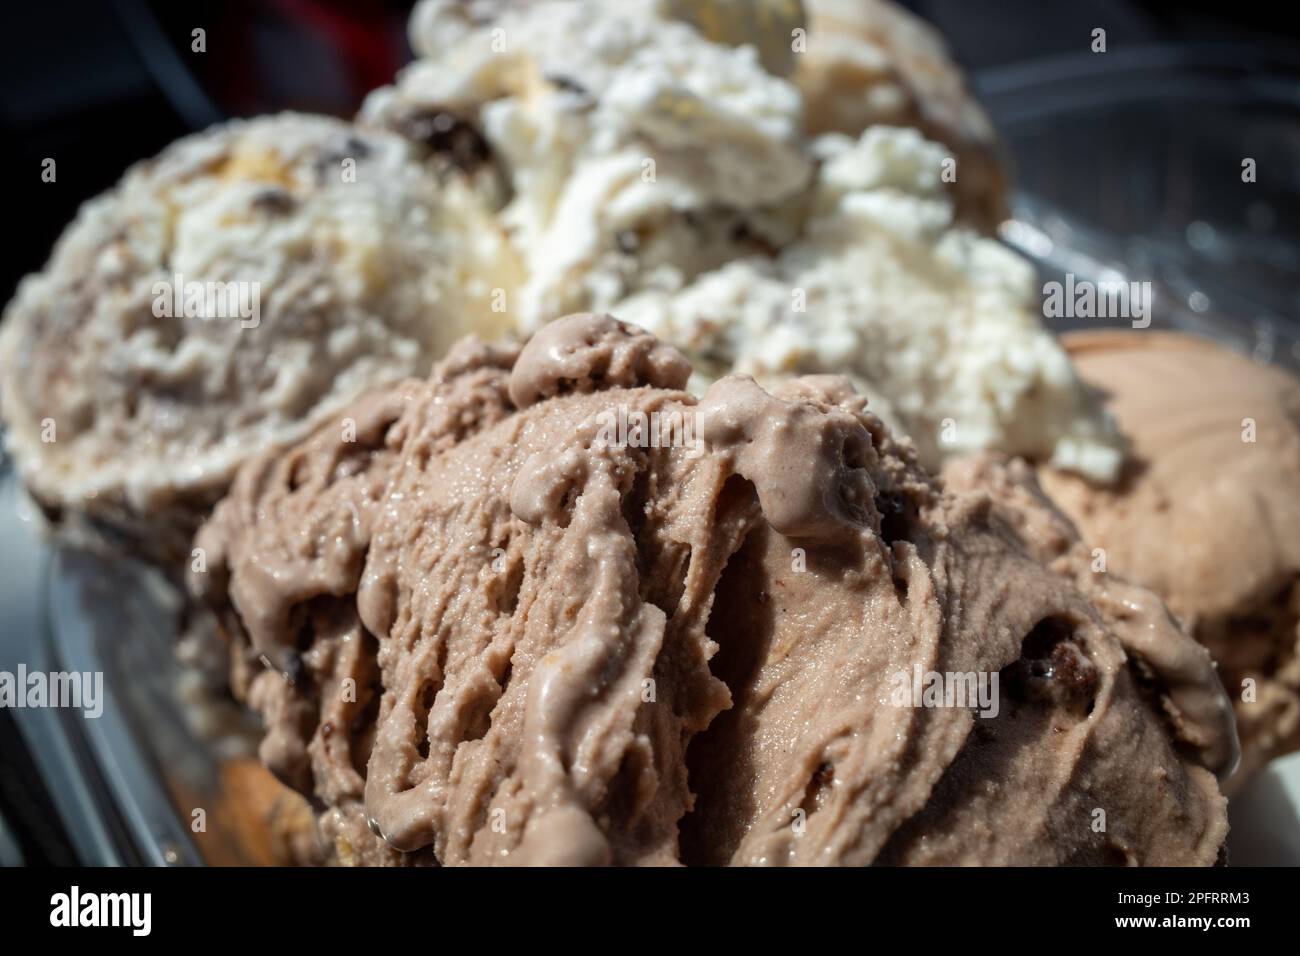 Esta foto de primer plano captura los deliciosos detalles de dos deliciosos sabores de helado. La textura cremosa y los colores vibrantes del helado Foto de stock